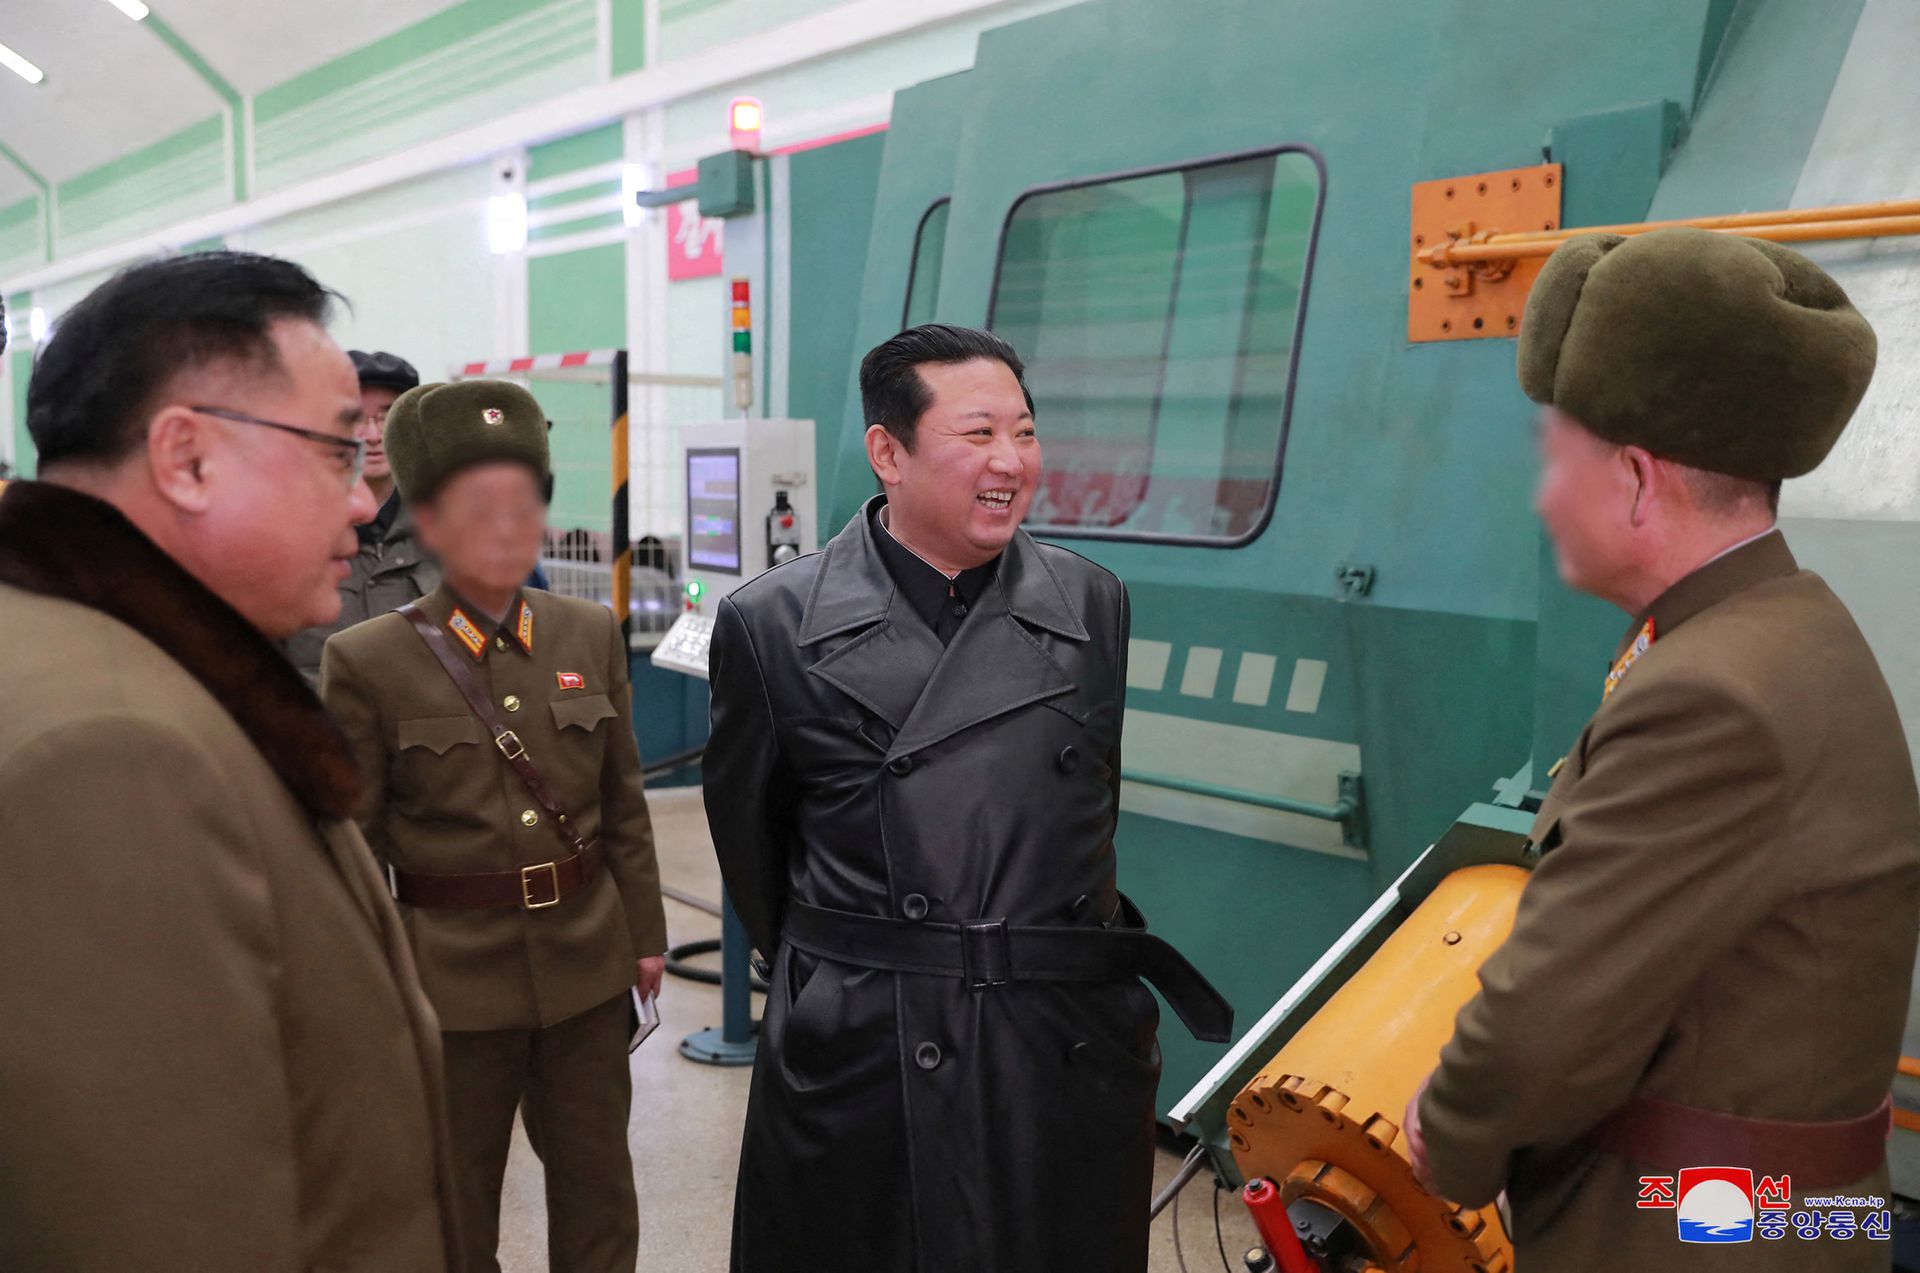 North Korea leader Kim Jong Un visits a munitions factory